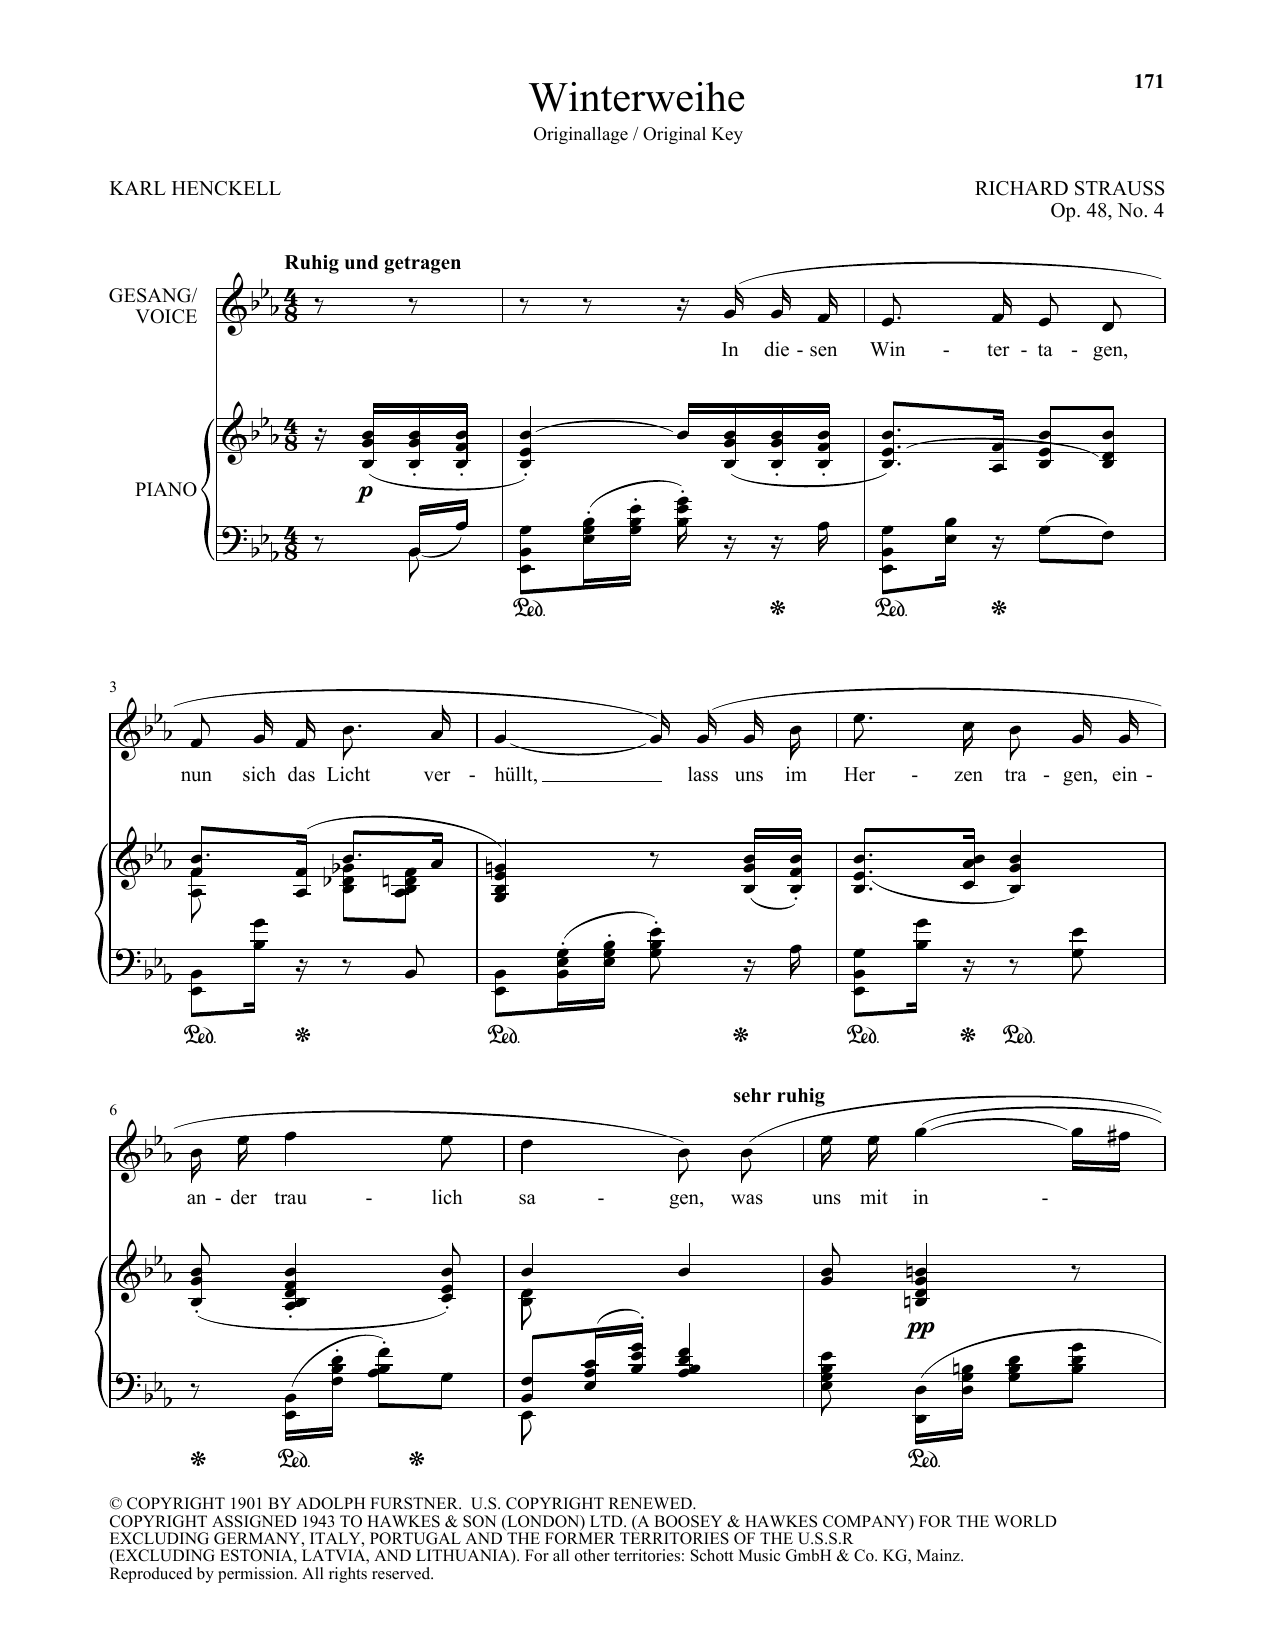 Download Richard Strauss Winterweihe (High Voice) Sheet Music